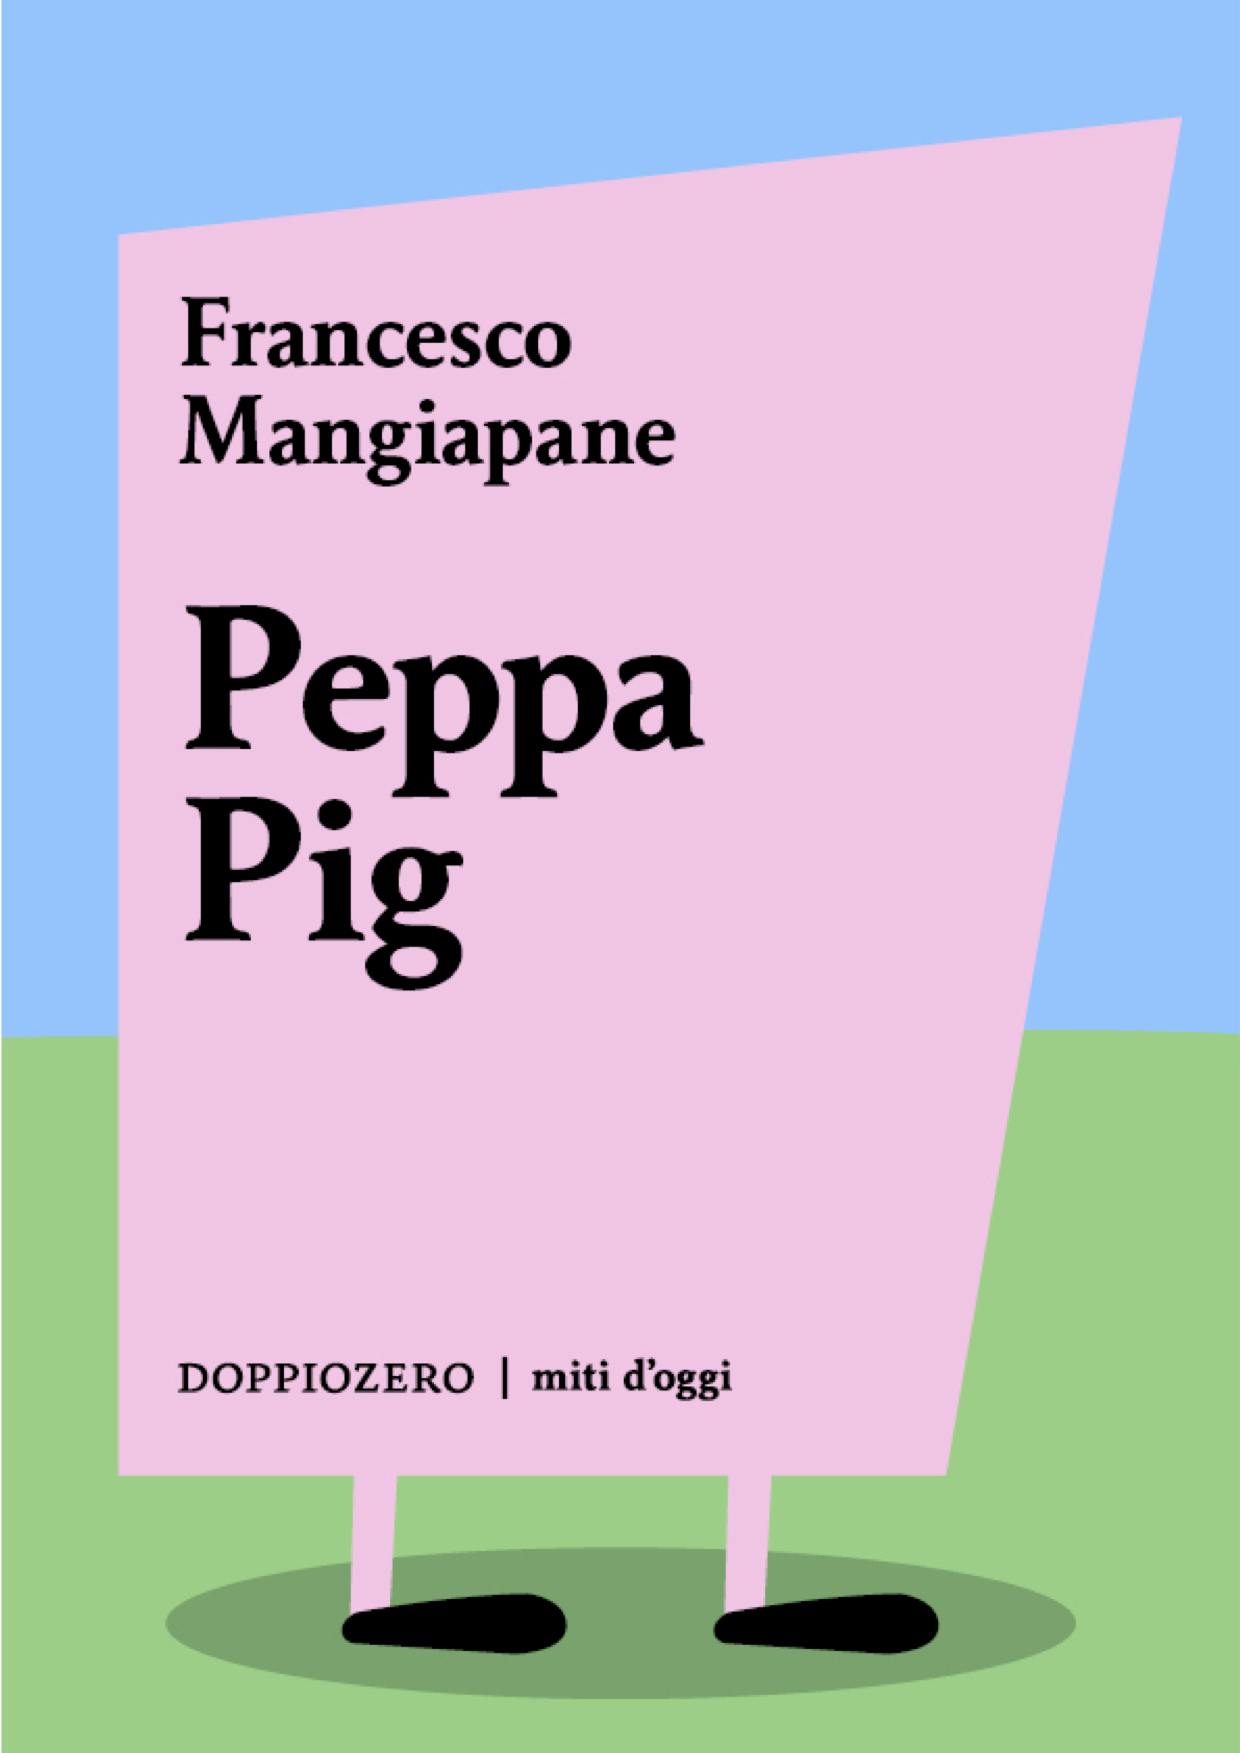 Rassegna stampa del mio libro su Peppa Pig (c'è anche L'Espresso!!!)